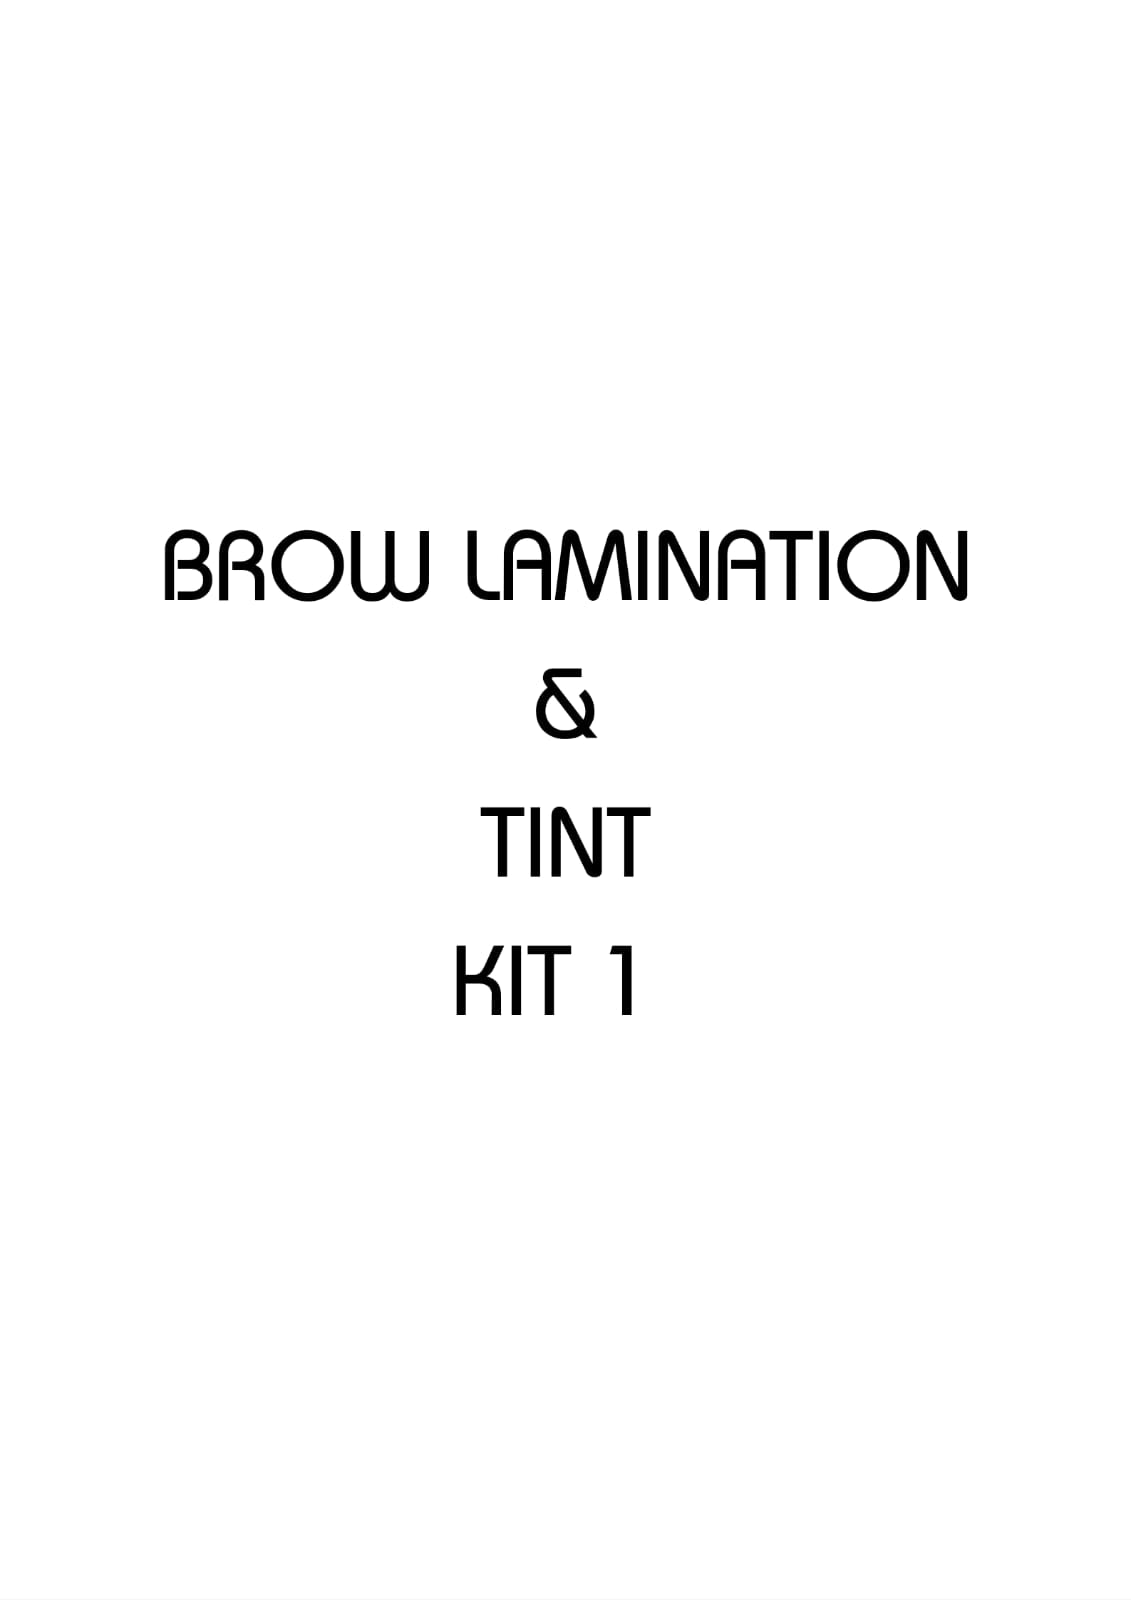 BROW LAMINATION & TINT